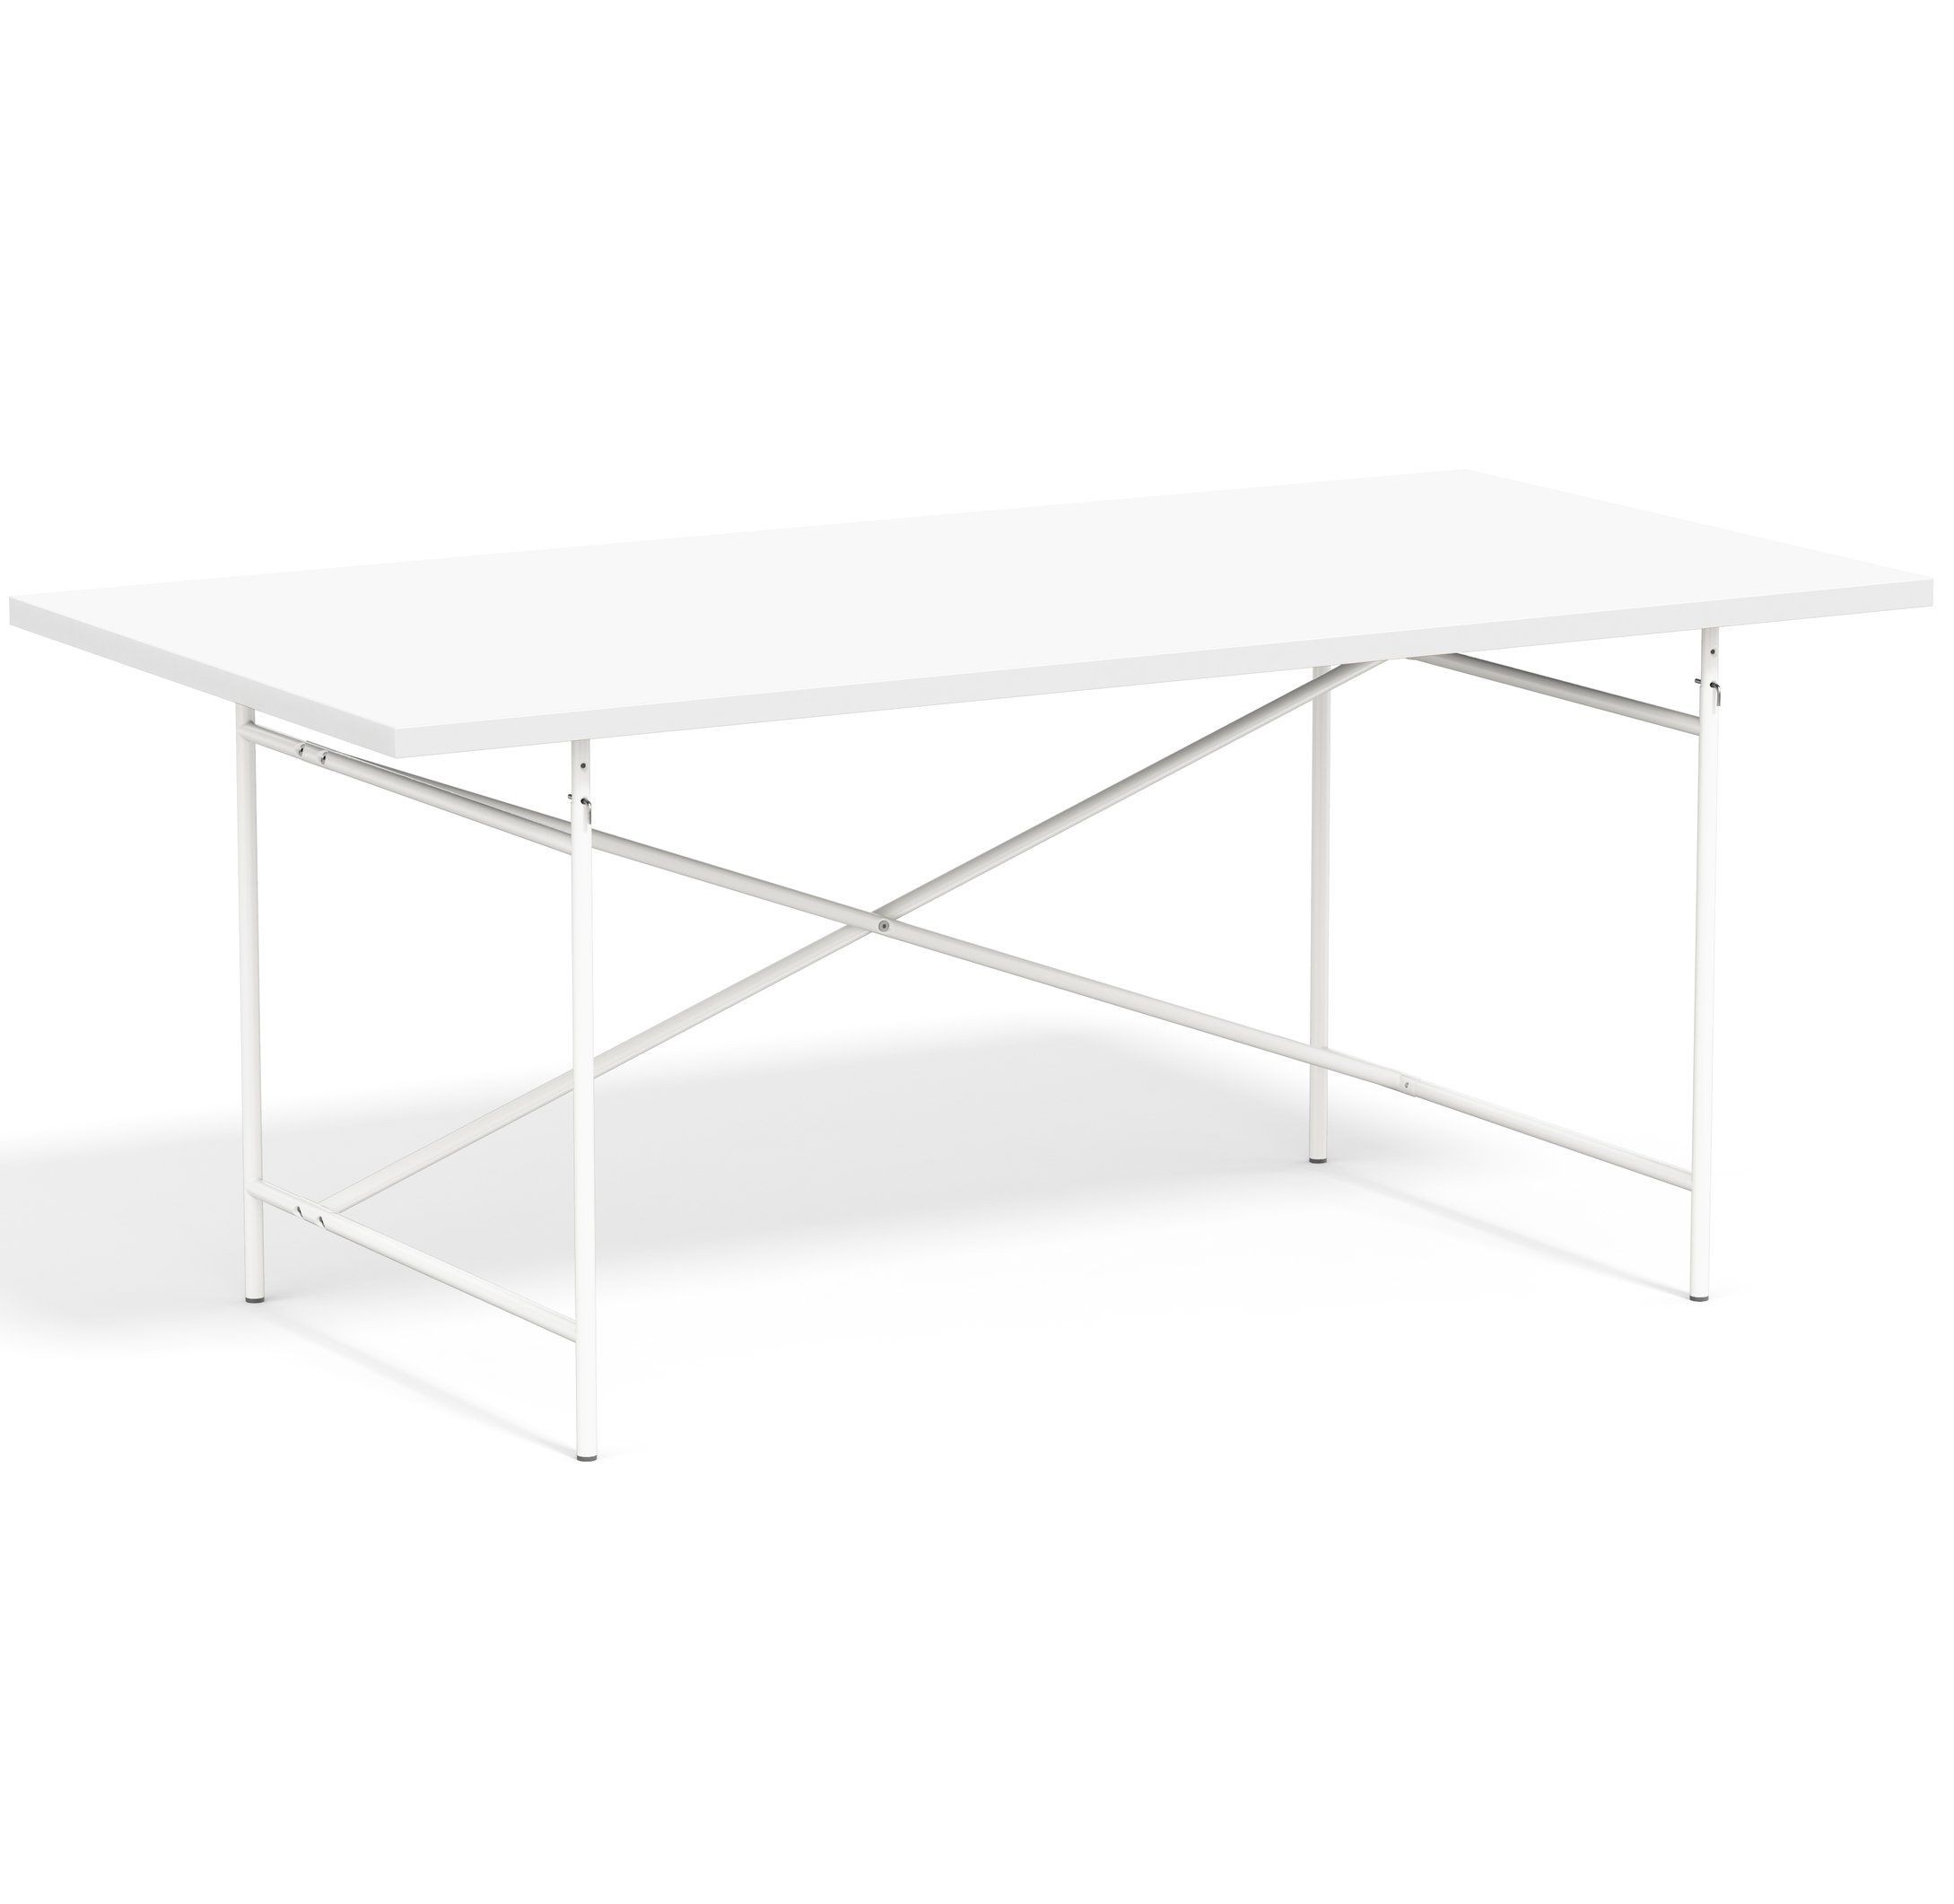 Lampert Eiermann Tischgestell 2 - 135 x 78 cm - Weiss - Melmain weiß full--59